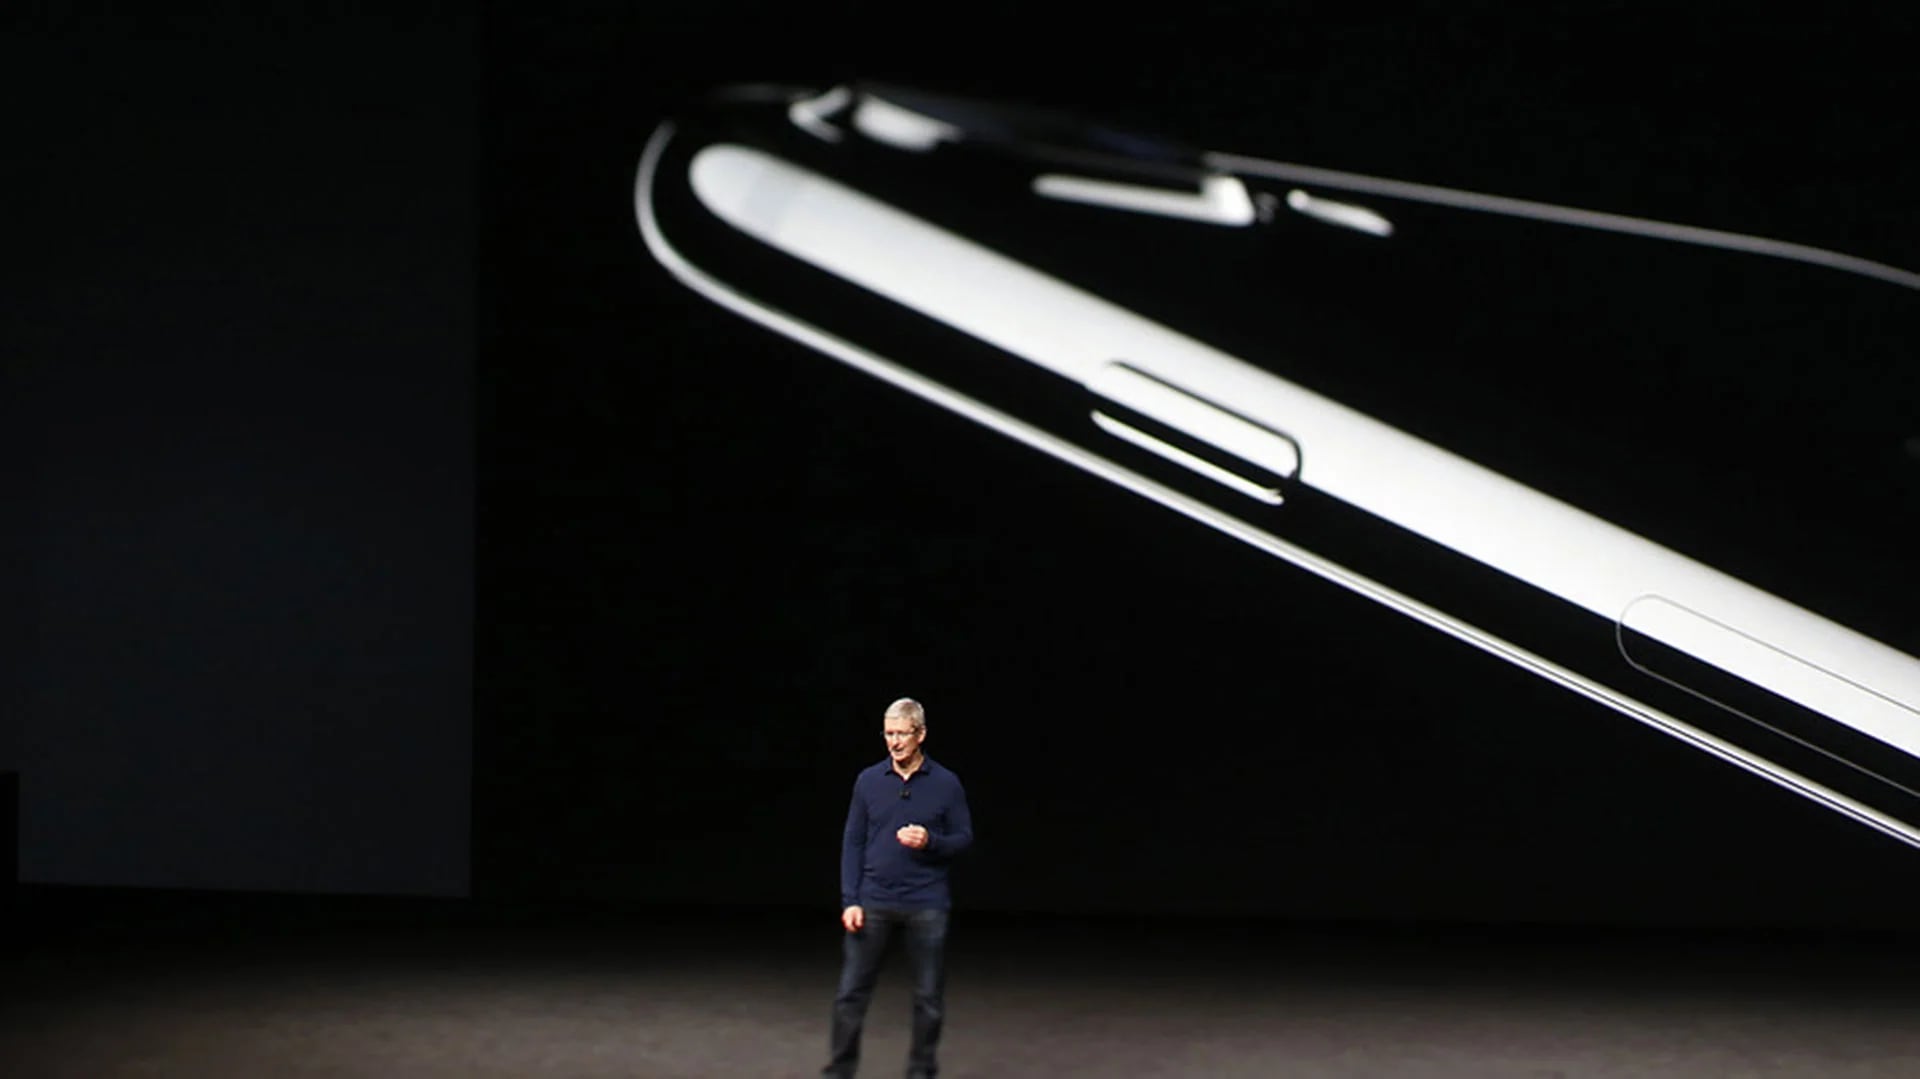 El iPhone 8 tendría una pantalla curva